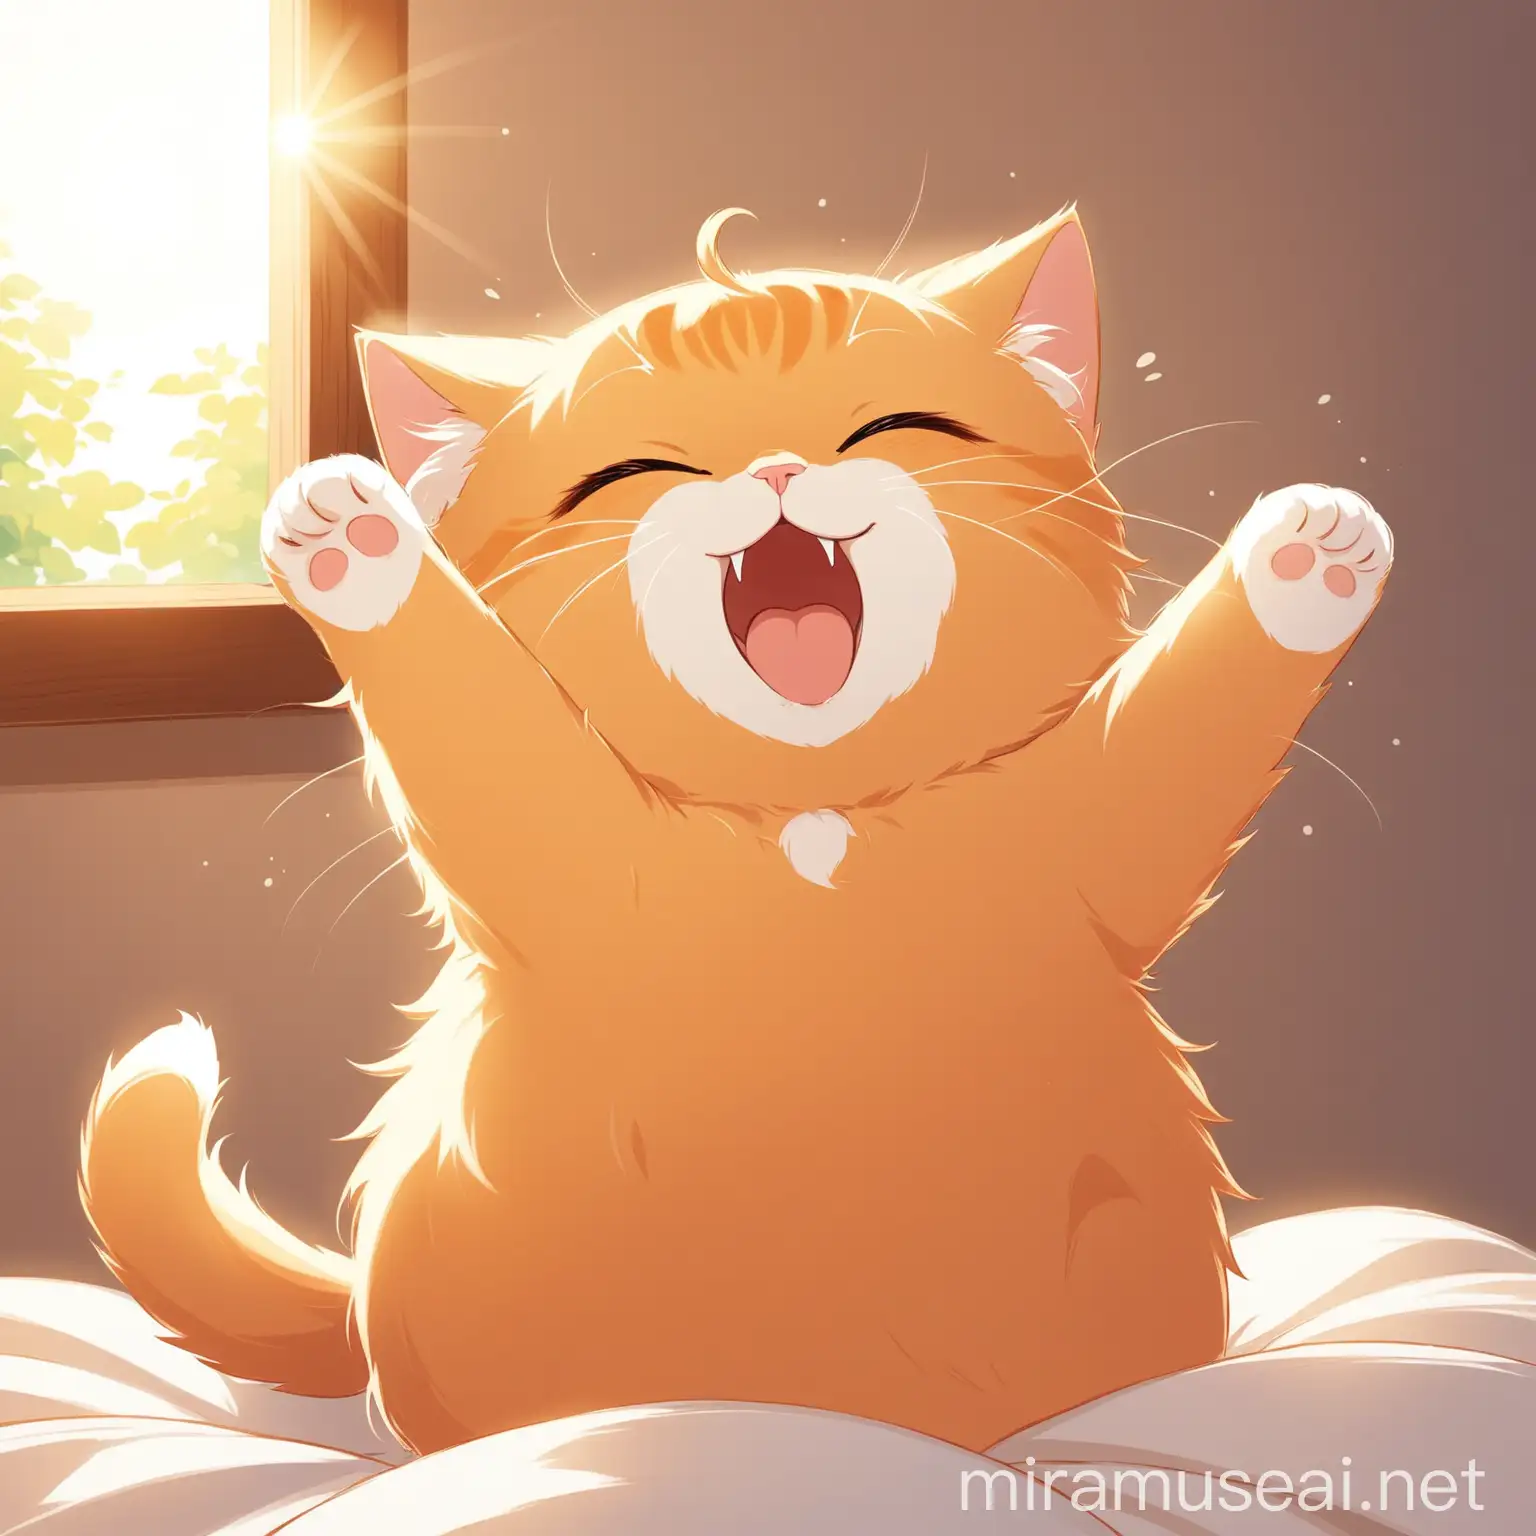 Котик проснулся утром светит солнце котик зевает и потягивается 